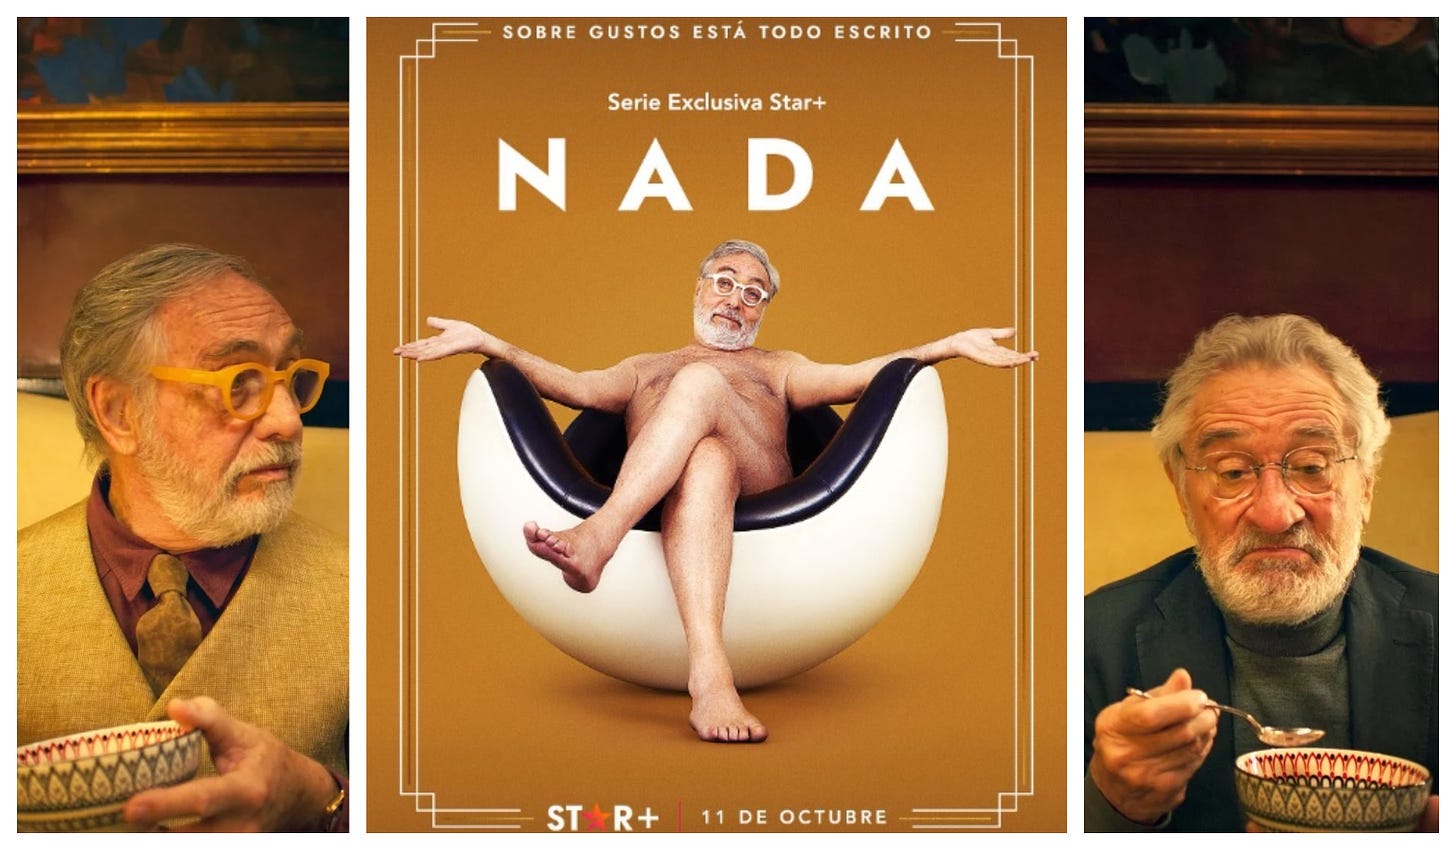 Luis Brandoni promociona “Nada”, la serie en la que actúa De Niro,  completamente desnudo – Diario El Ciudadano y la Región